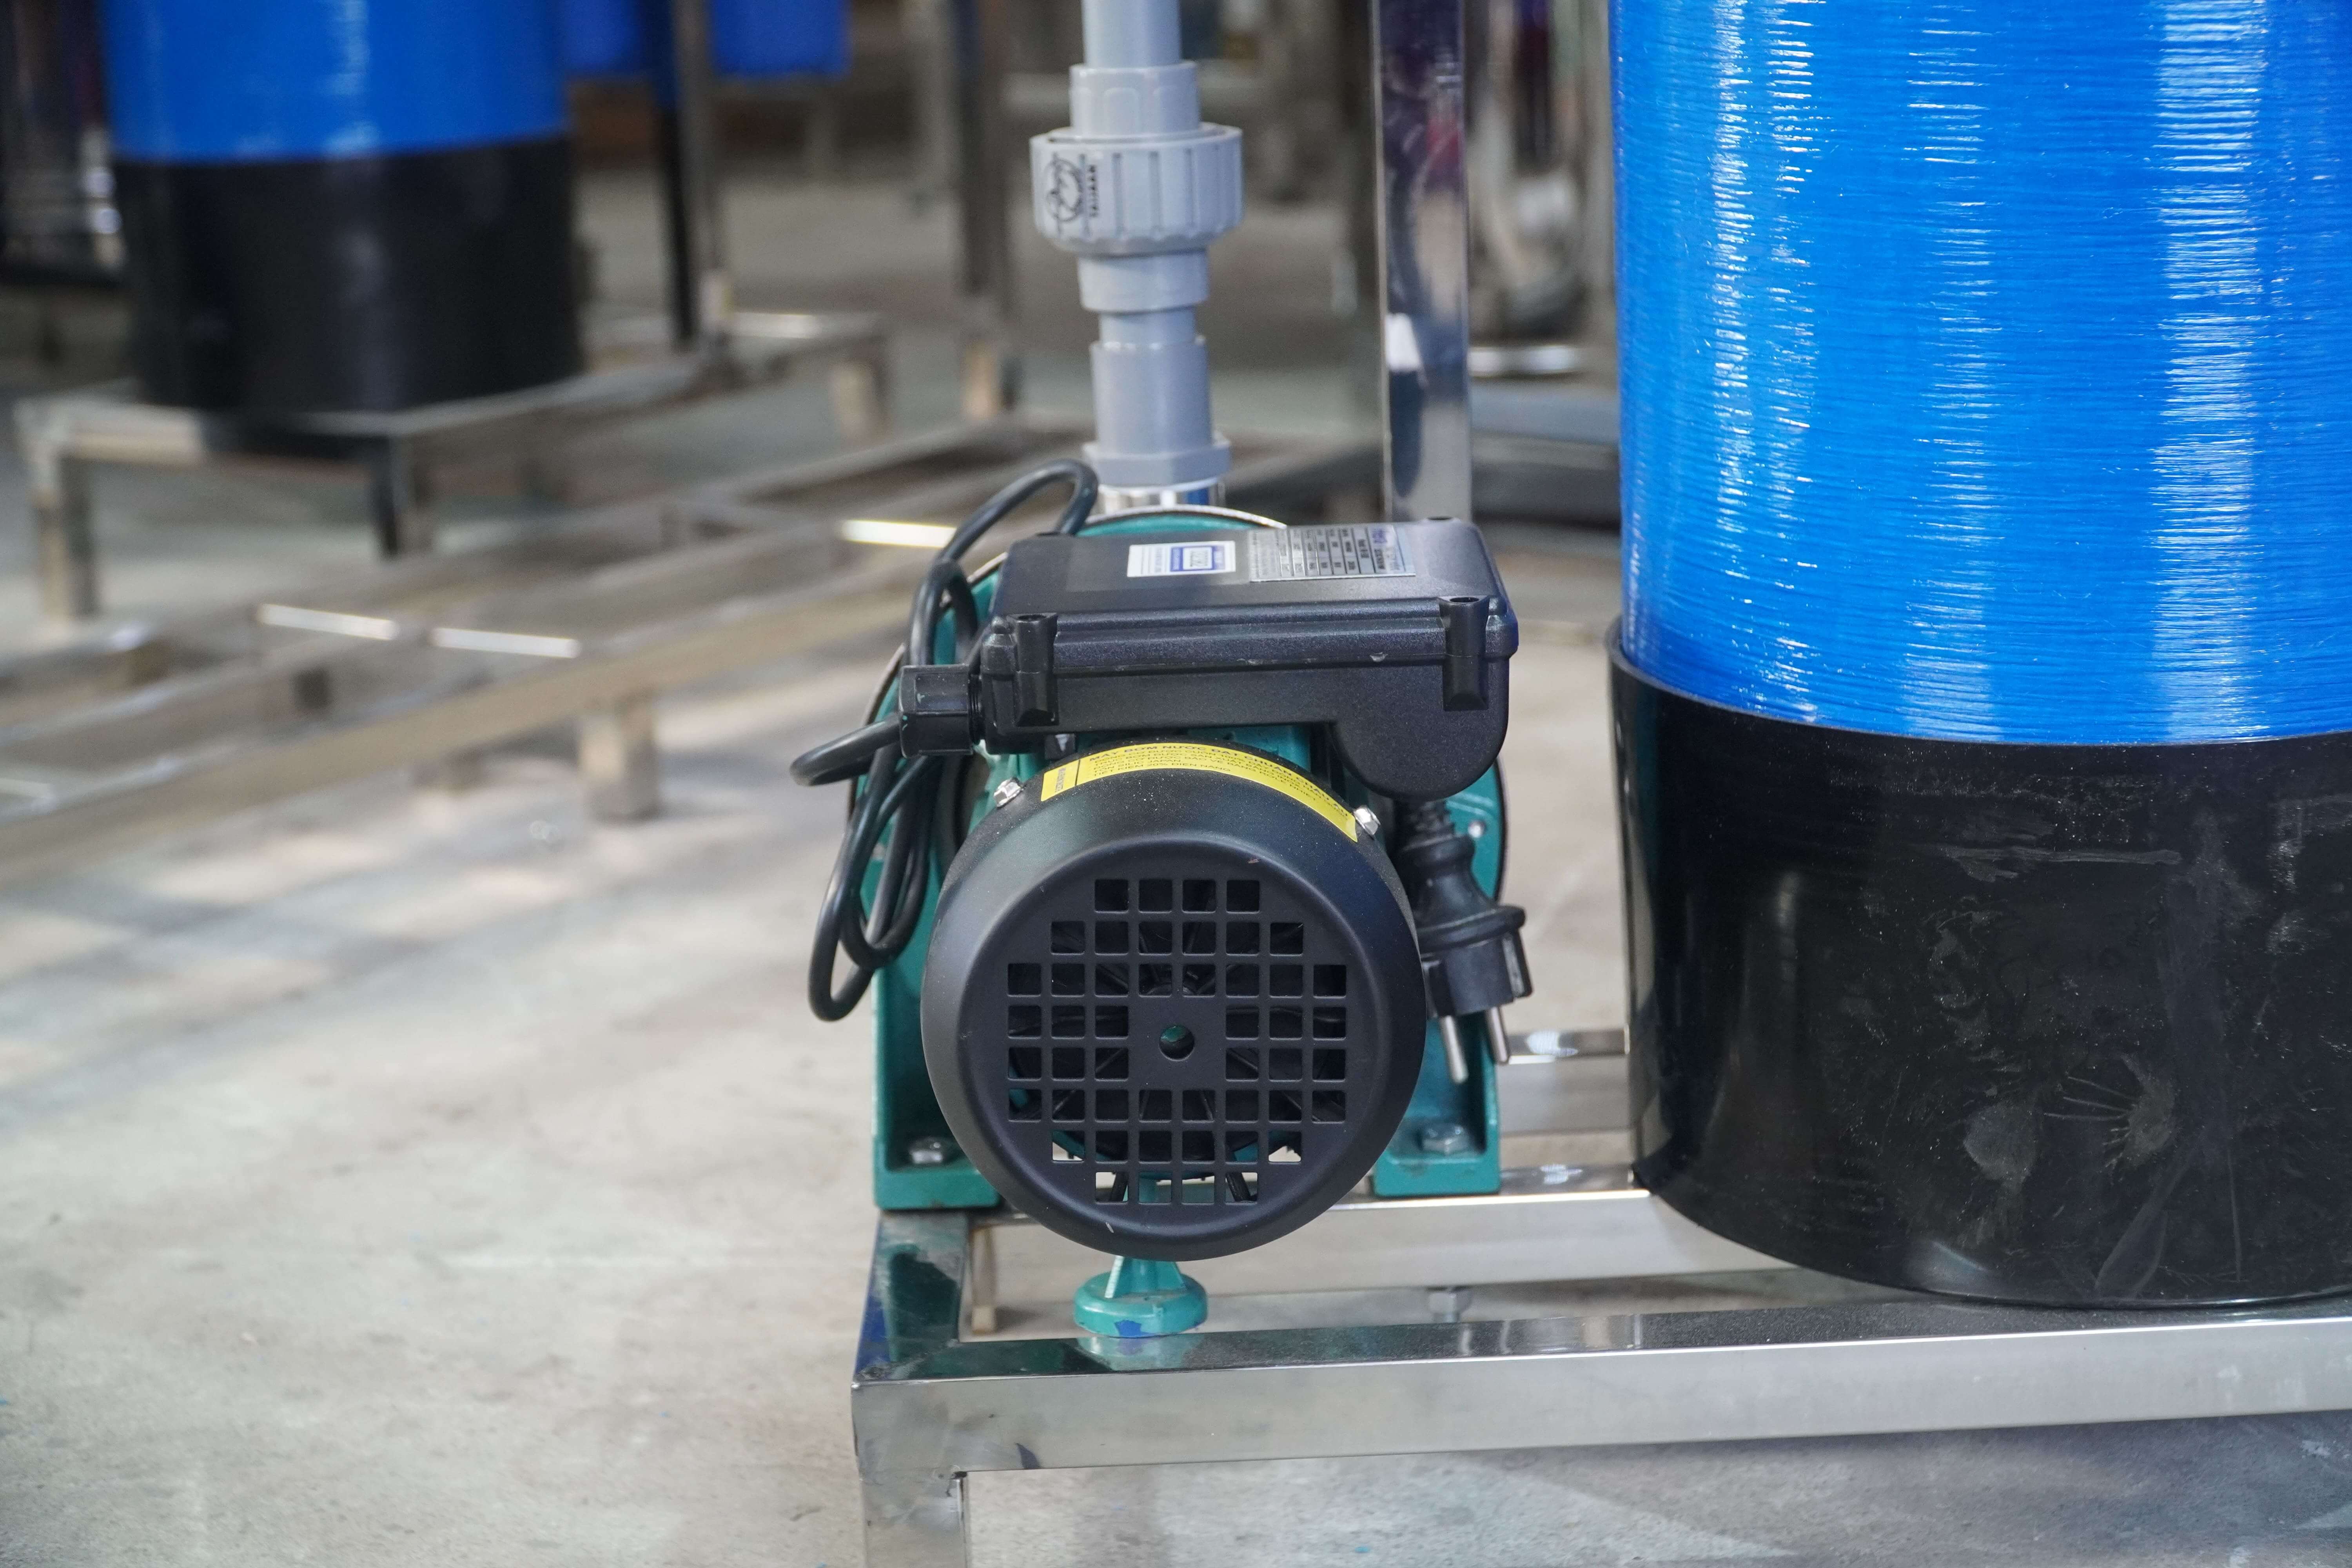 Hệ thống lọc nước giếng khoan nhiễm sắt chuyên dụng Famy GK02C hiệu quả lọc cao